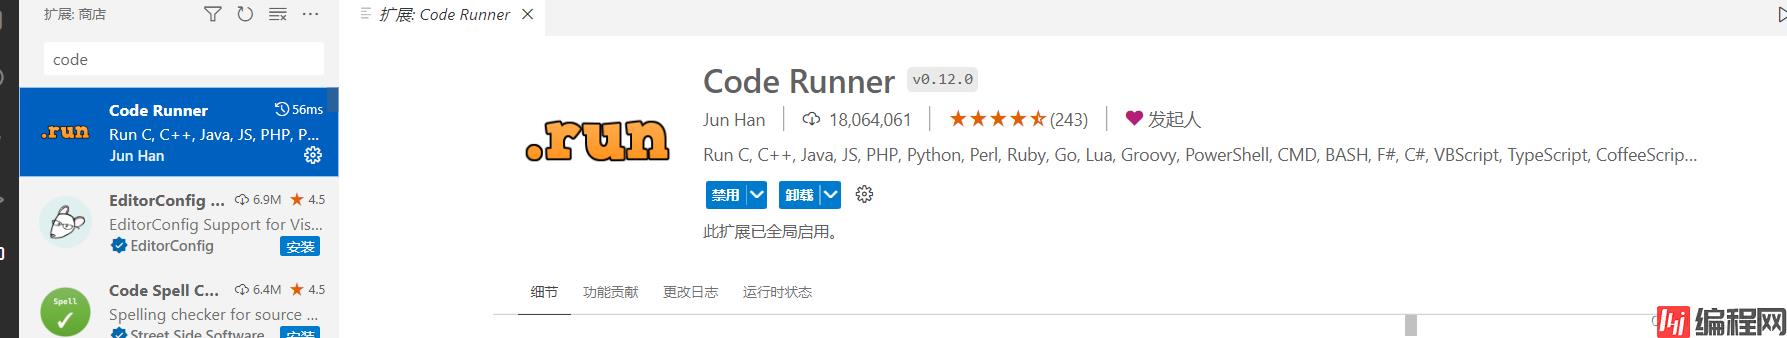 code runner